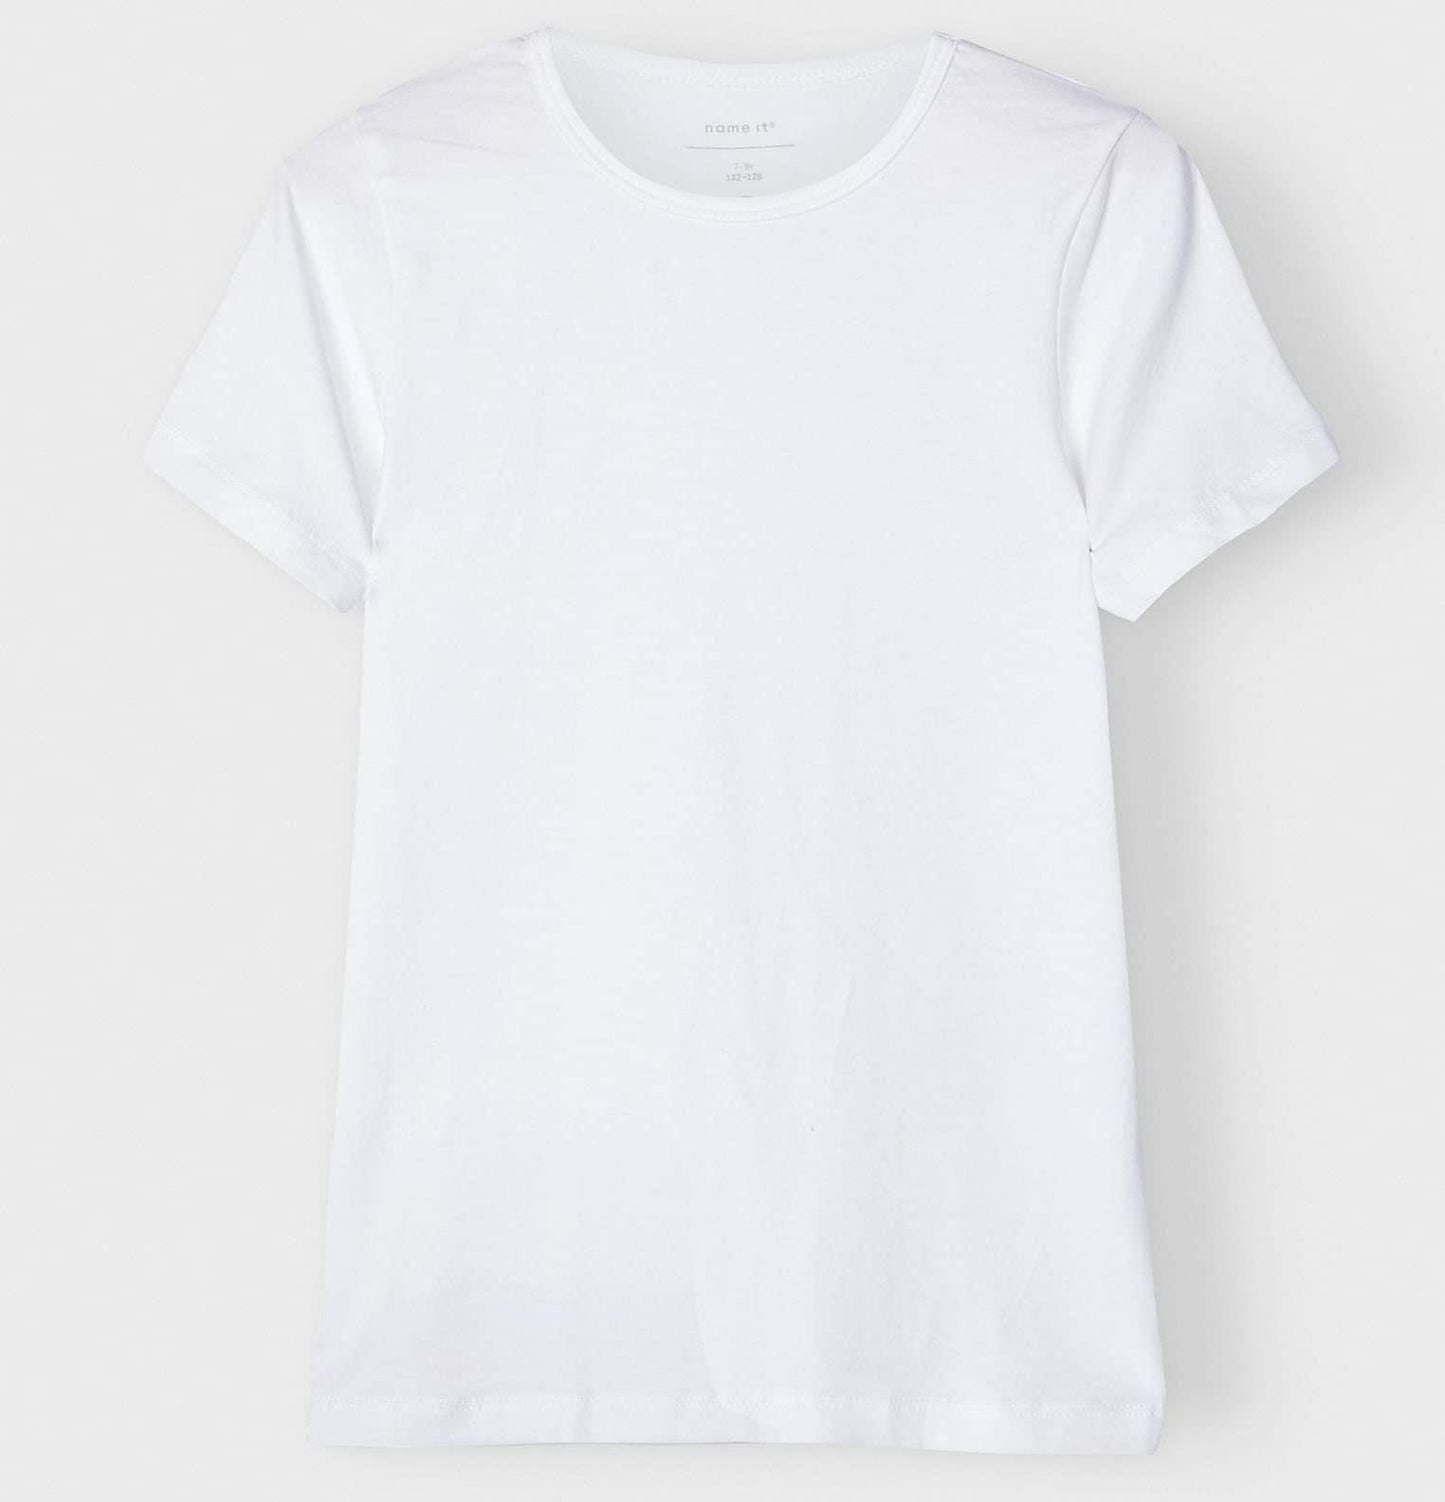 name it Boy's Slim 2 PACK T-Shirt